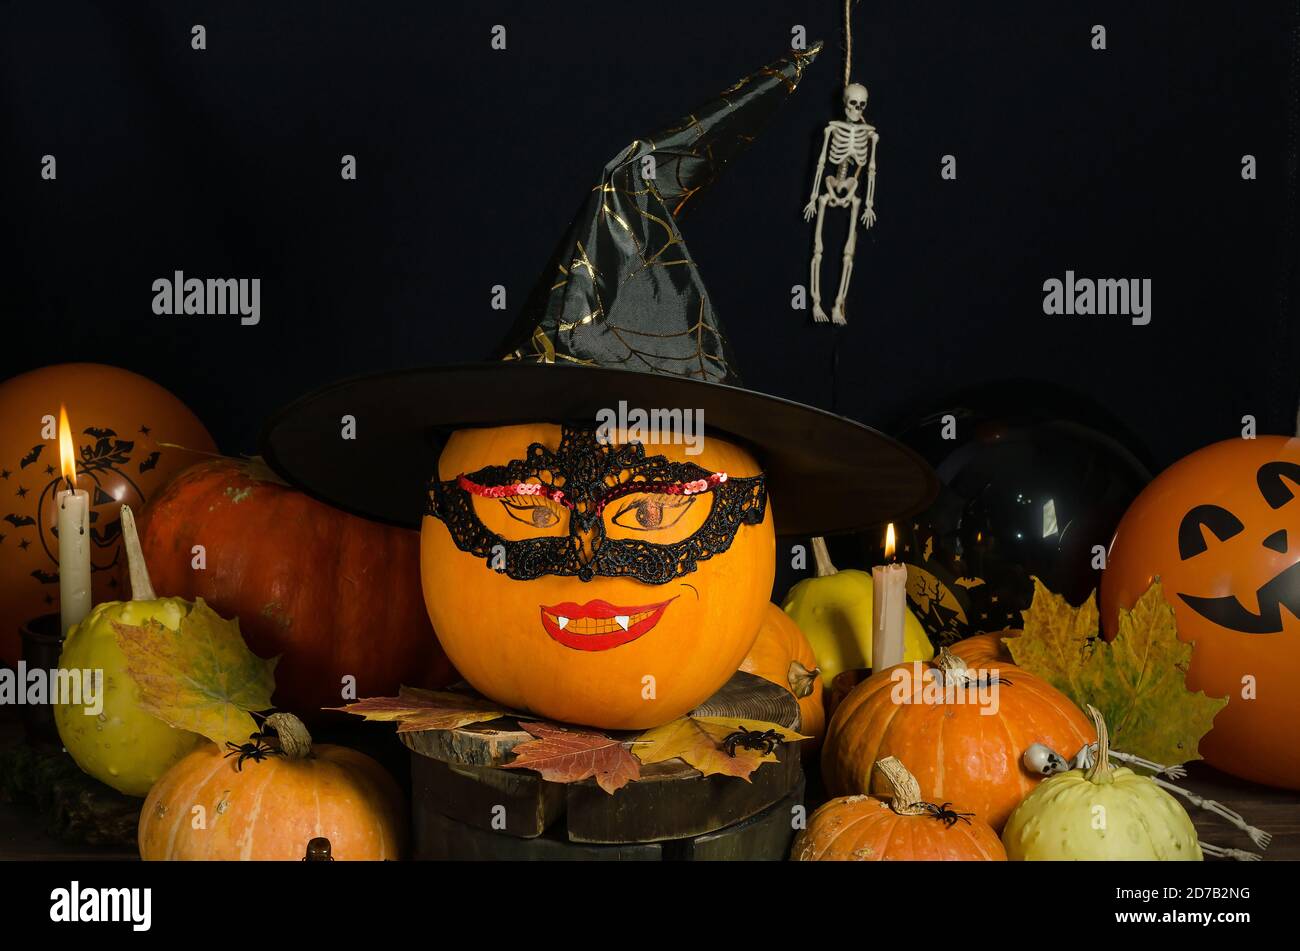 Halloween Hintergrund, Kürbis mit gemaltem Gesicht in Maske und Hexenhut auf schwarzem Hintergrund. Halloween Home Dekorieren Idee Stockfoto